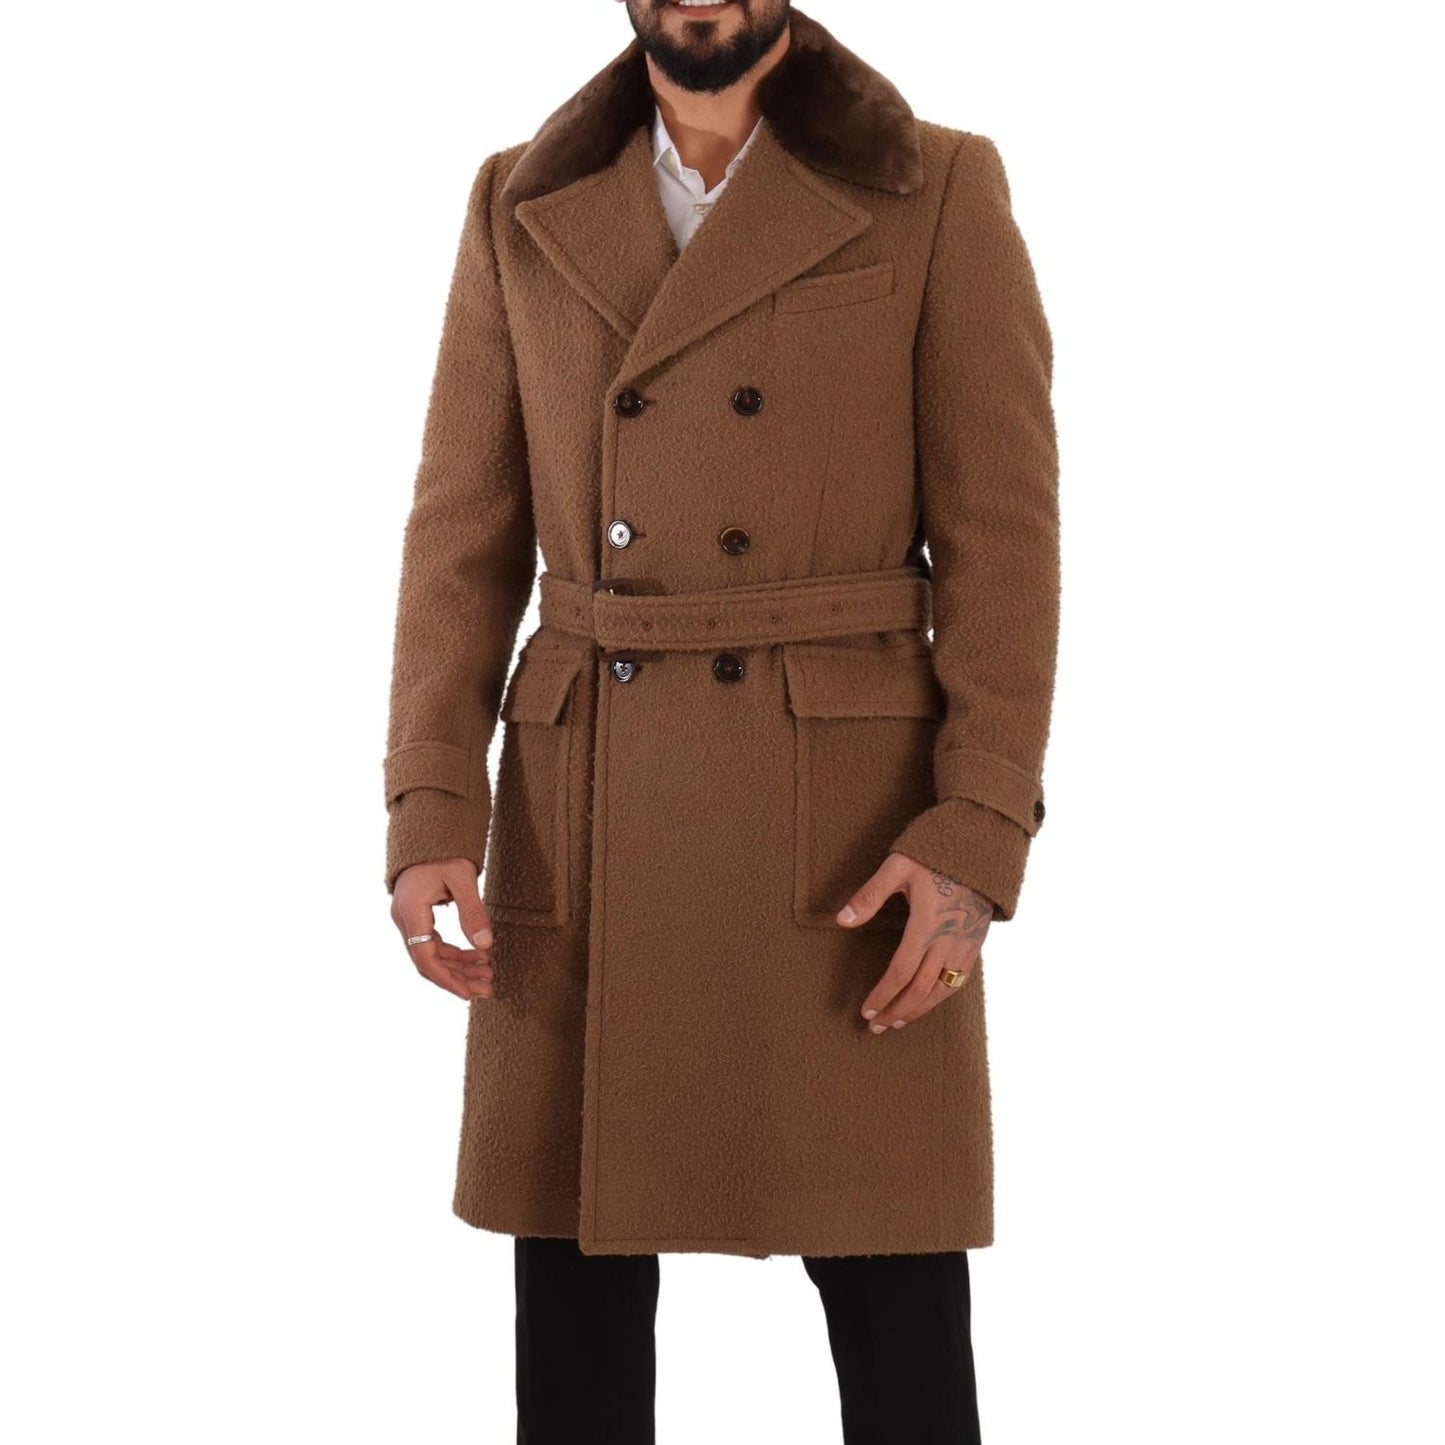 Dolce & Gabbana Elegant Double Breasted Wool Overcoat brown-wool-long-double-breasted-overcoat-jacket IMG_5045-d05cf6f6-b5a.jpg